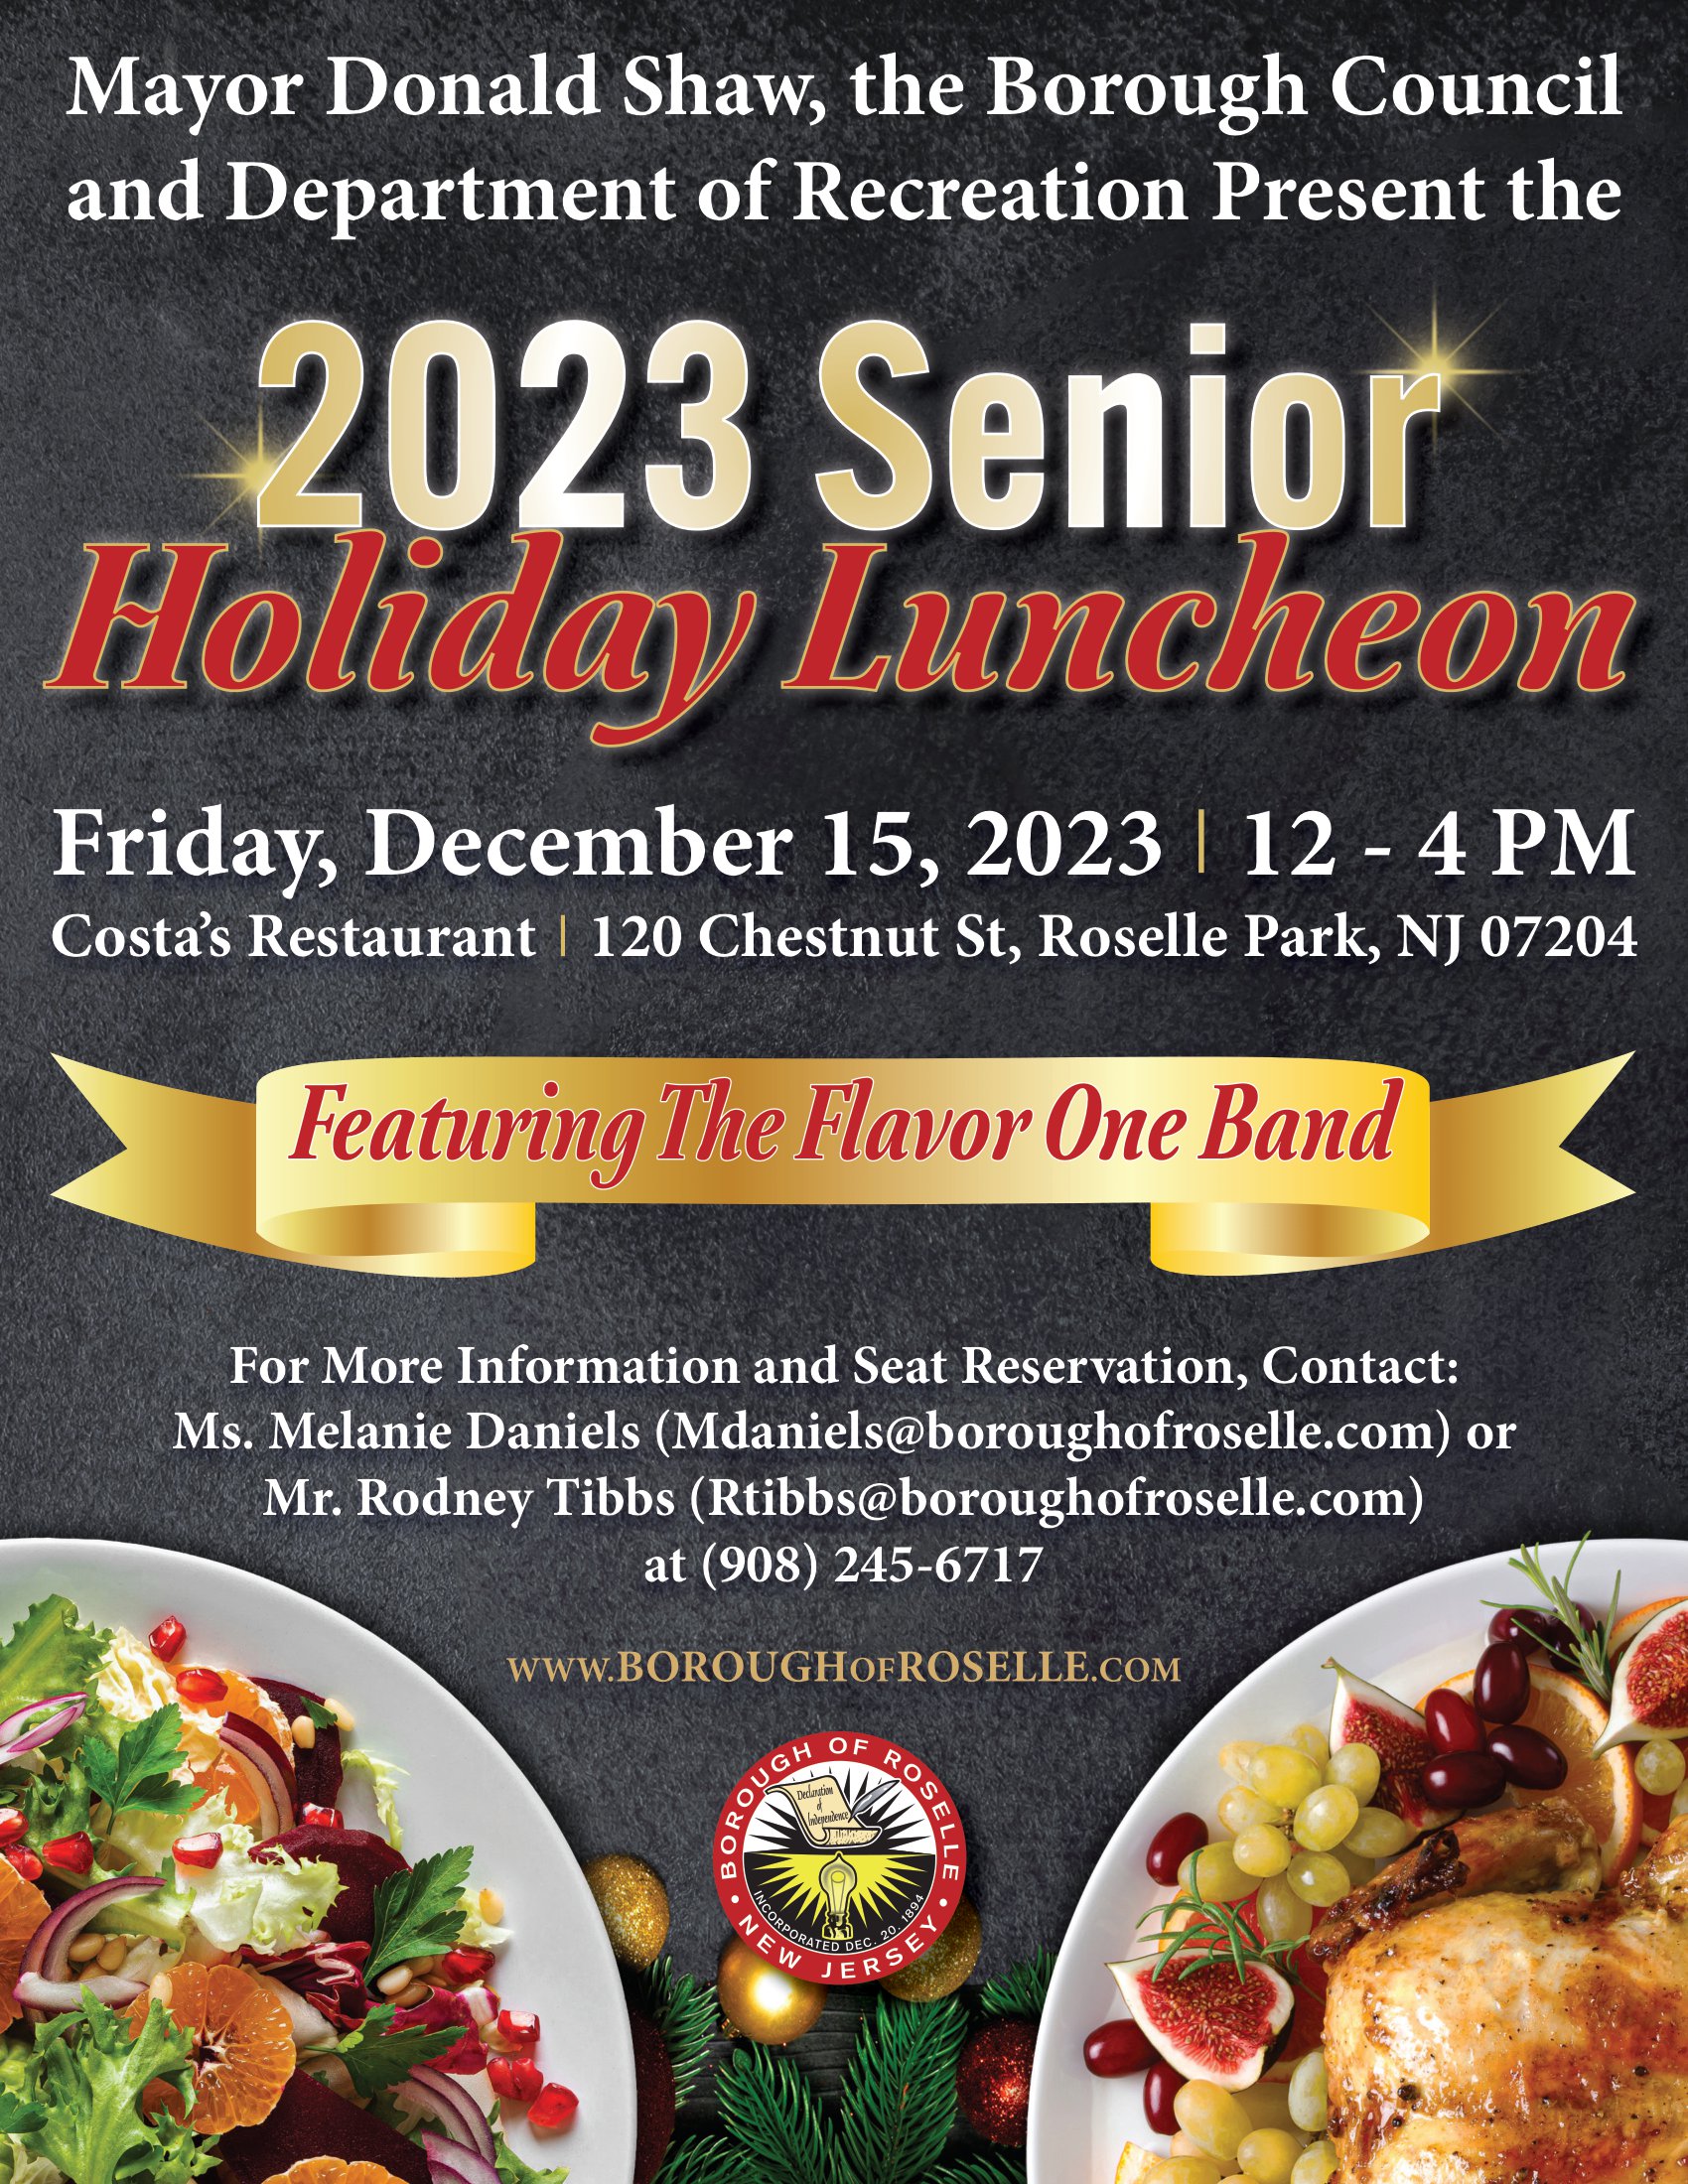 Senior Holiday Luncheon flyer 2023 v1